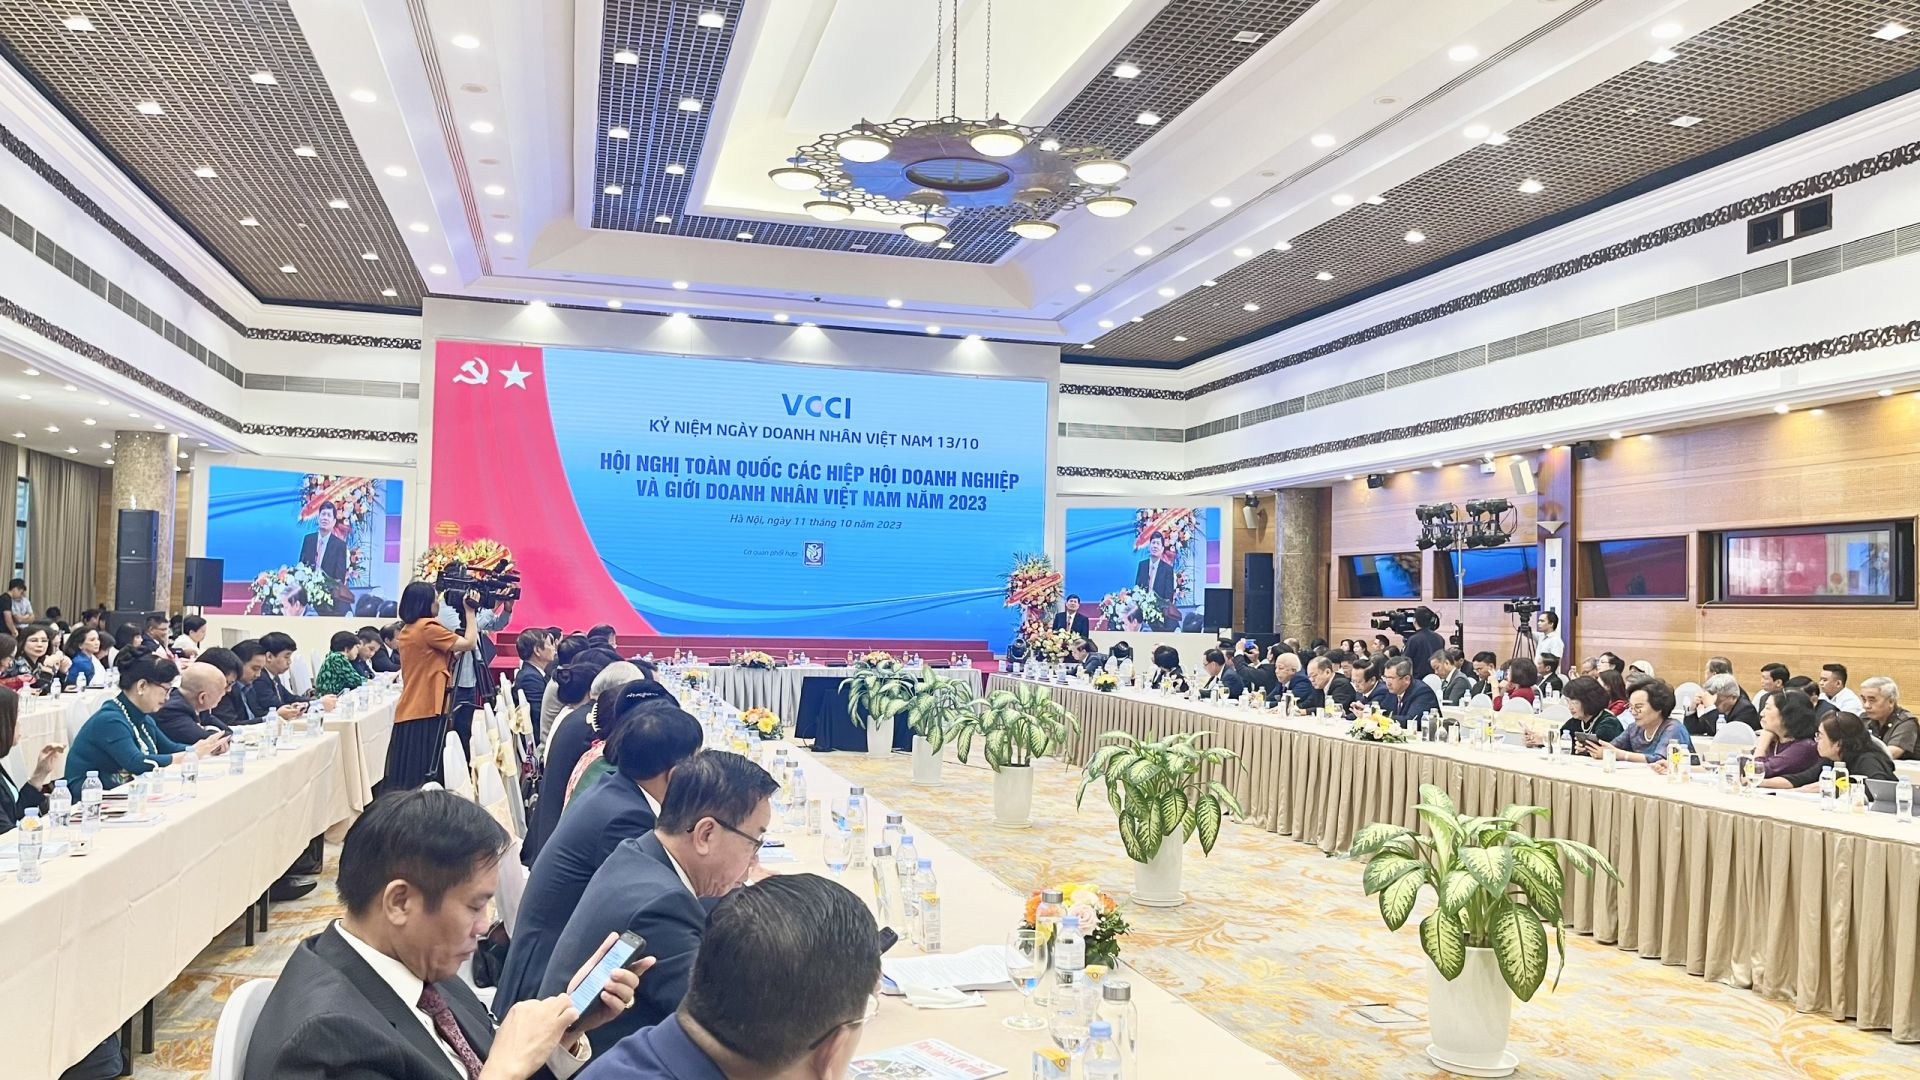 Đông đảo cộng đồng doanh nghiệp tham dự Hội nghị toàn quốc các hiệp hội doanh nghiệp và giới doanh nhân Việt Nam, kỷ niệm 19 năm Ngày Doanh nhân Việt Nam